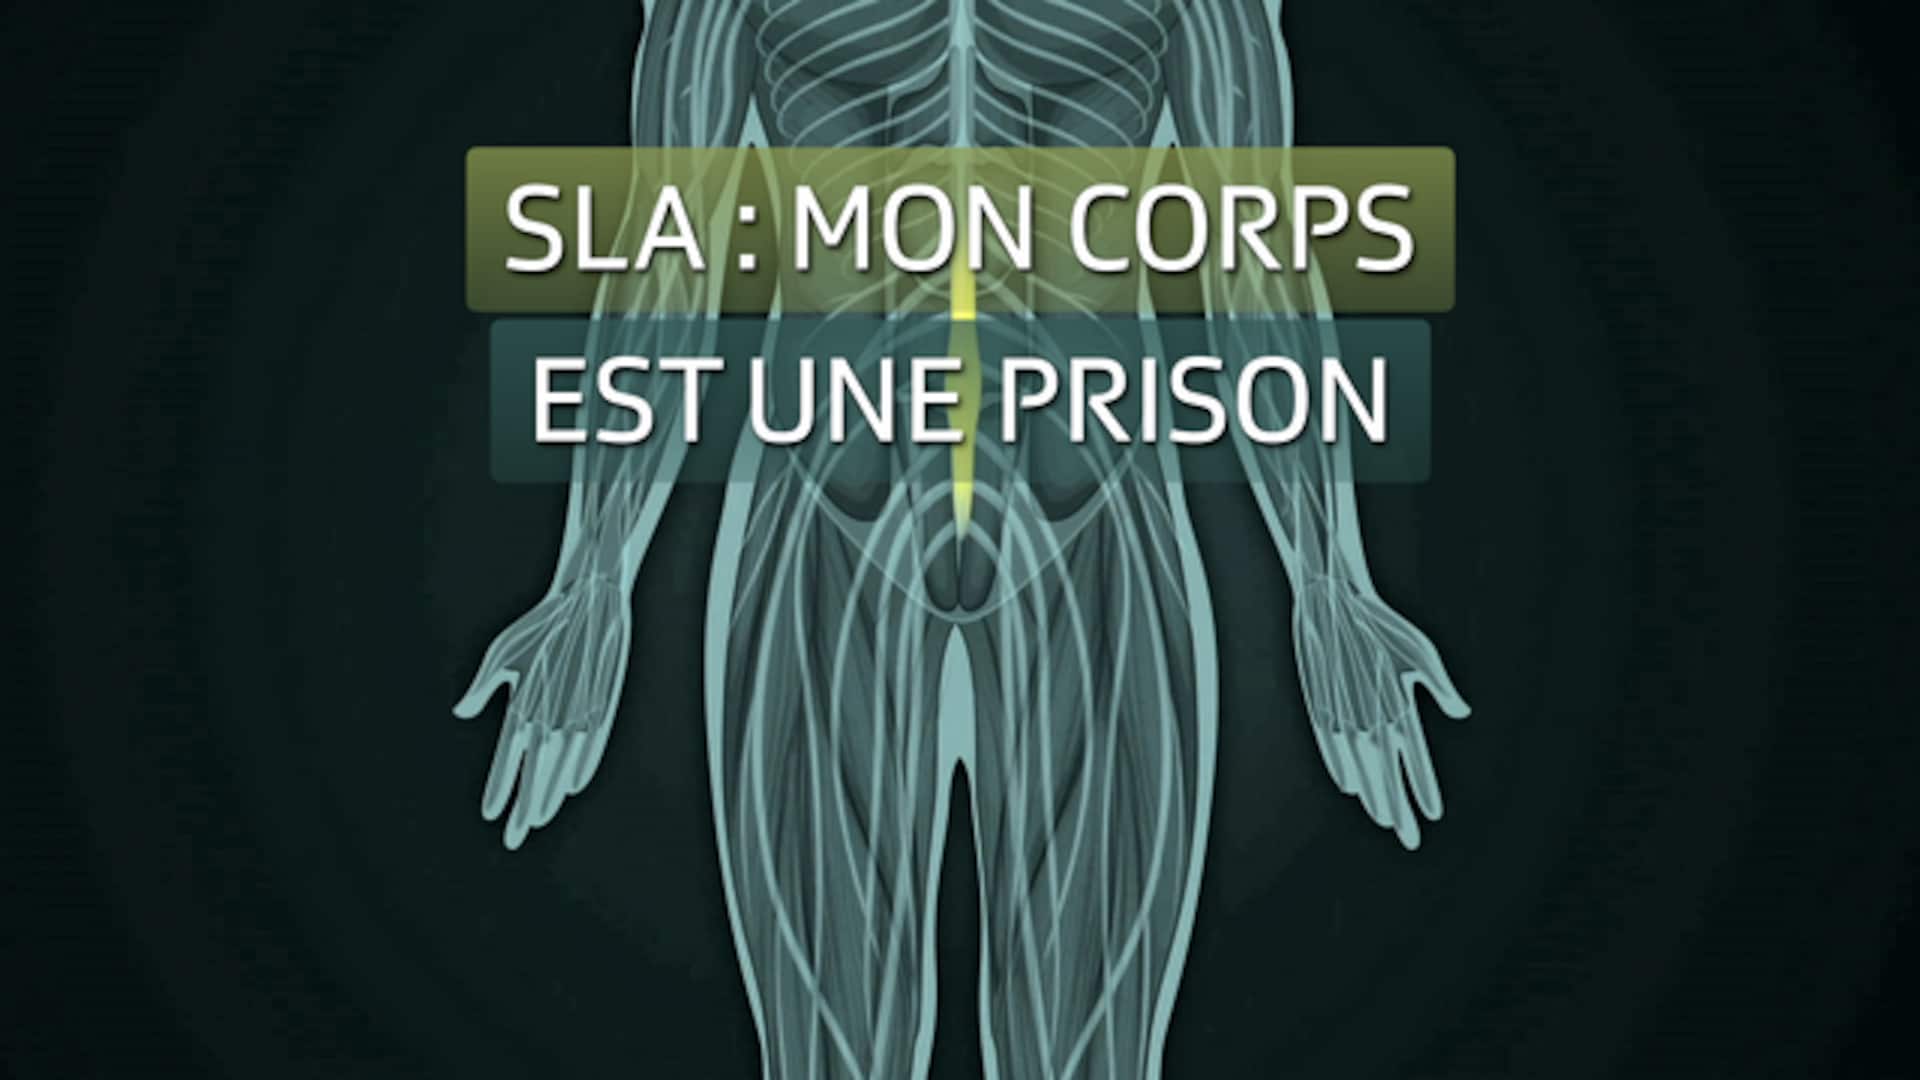 SLA : Mon corps est une prison